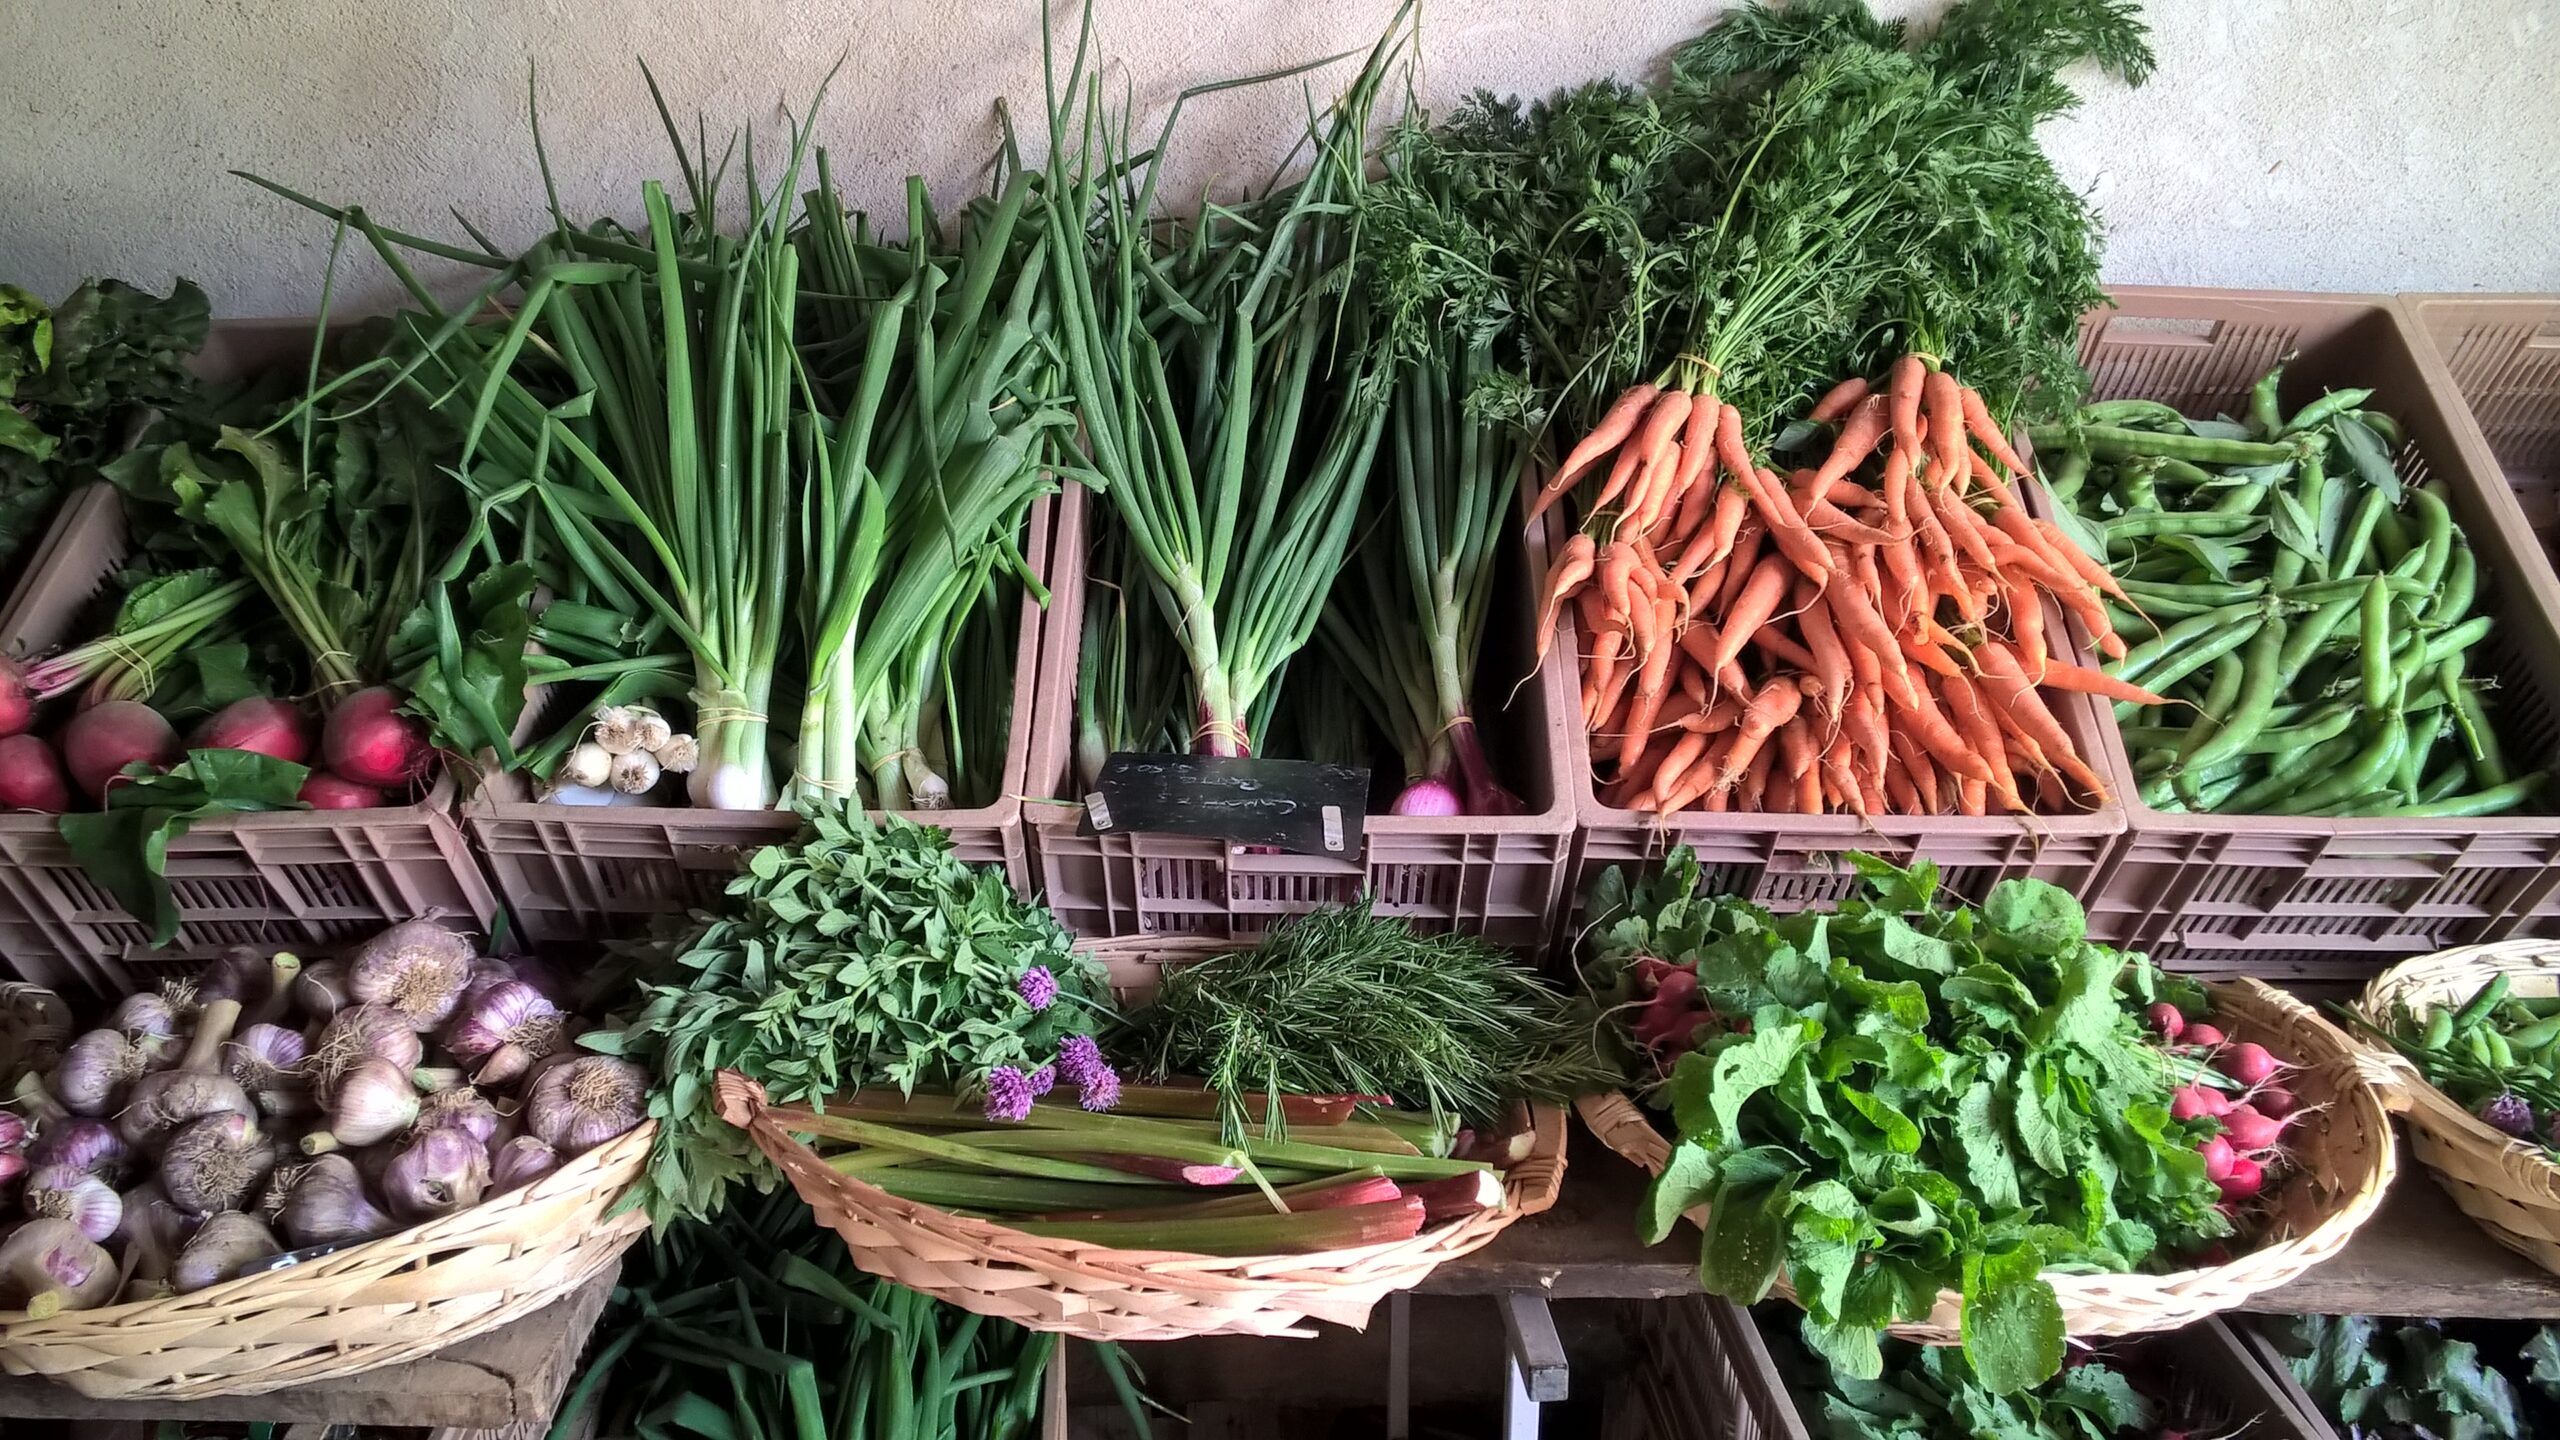 diversité de cagettes contenant des produits de saison des mois de mai-juin ( carottes, fèves, betteraves, ails, oignons)